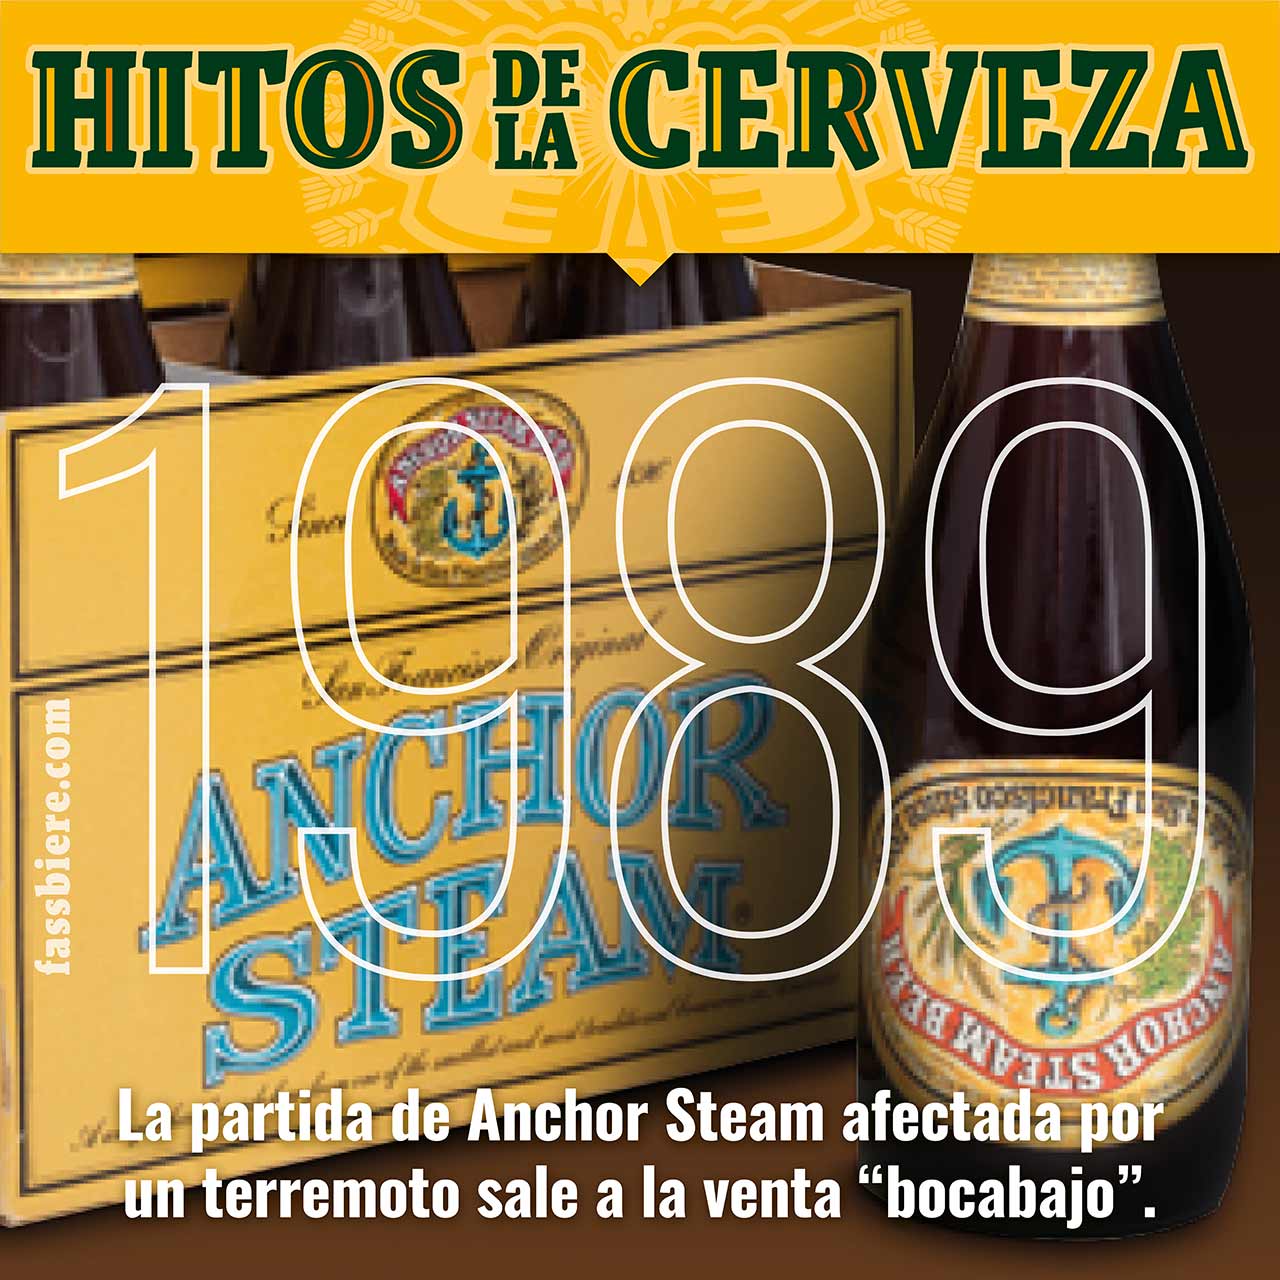 Hitos de la Cerveza en Fassbiere: En 1989, la partida de Anchor Steam afectada por el terremoto de Loma Prieta sale a la venta “bocabajo”.